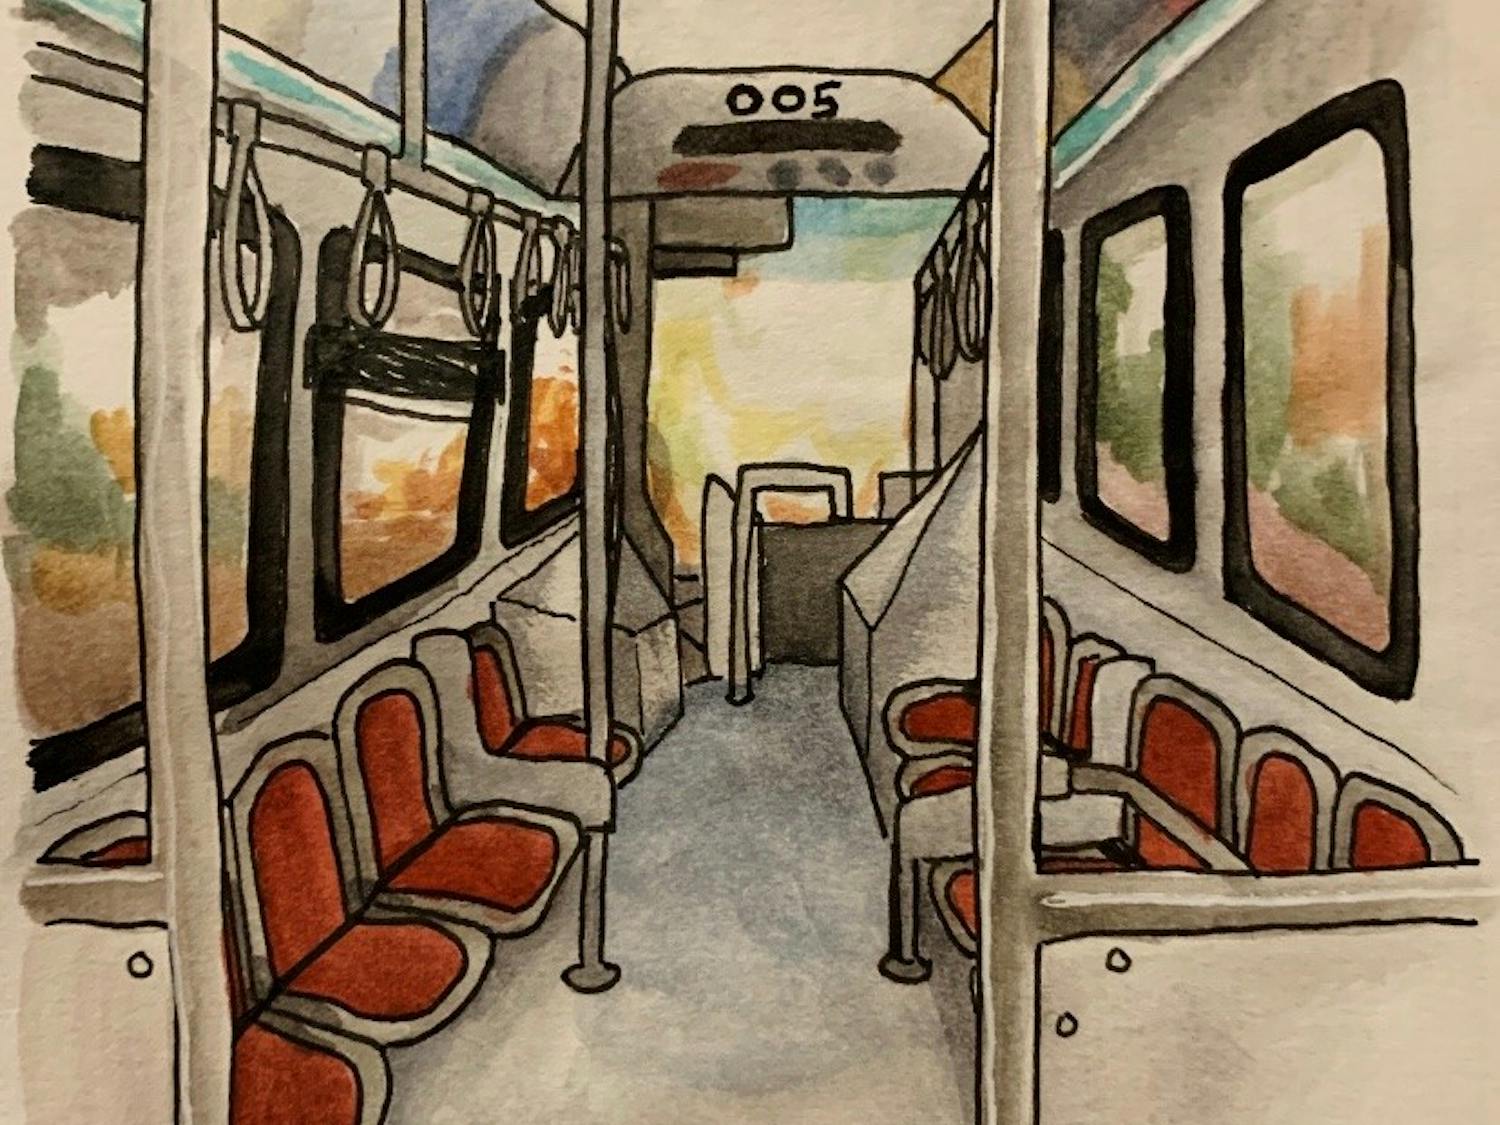 metrobus.jpg